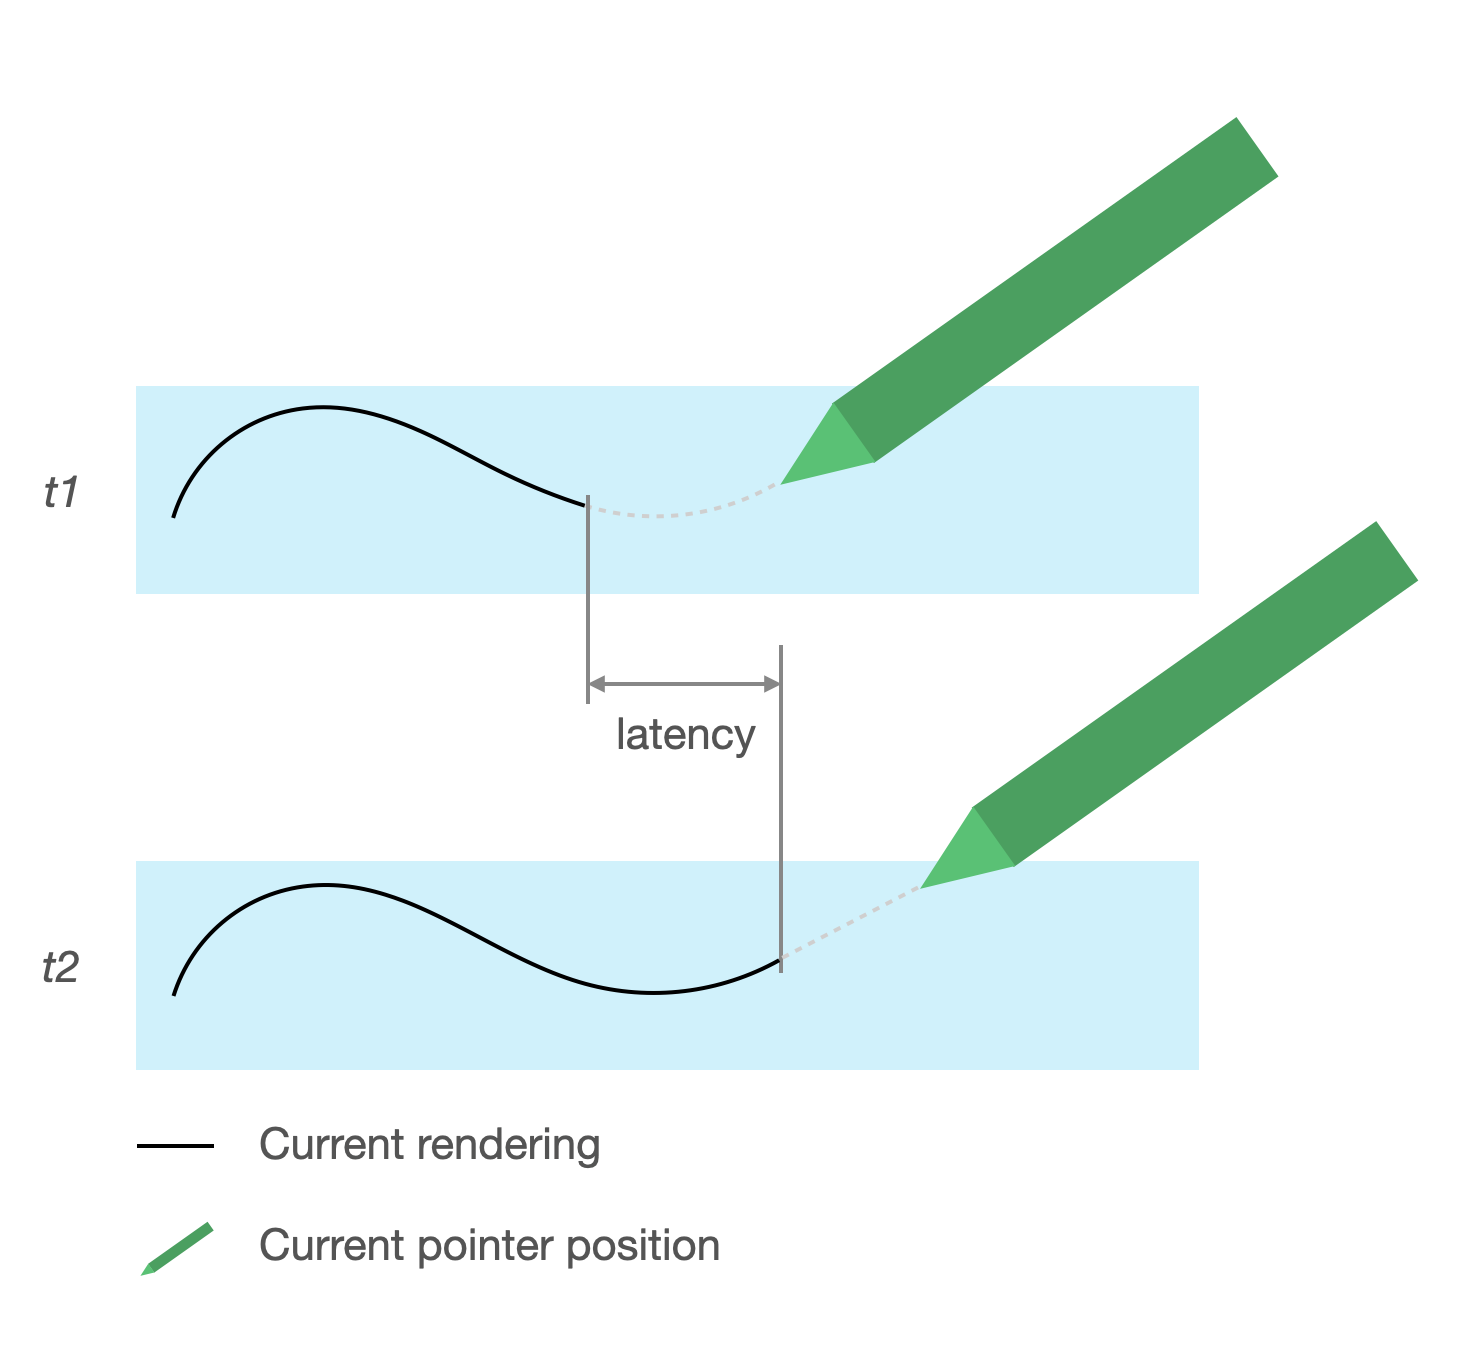 La latenza causa un ritardo rispetto alla posizione dello stilo per il tratto sottoposto a rendering. Lo spazio tra il tratto sottoposto a rendering e la posizione dello stilo rappresenta la latenza.